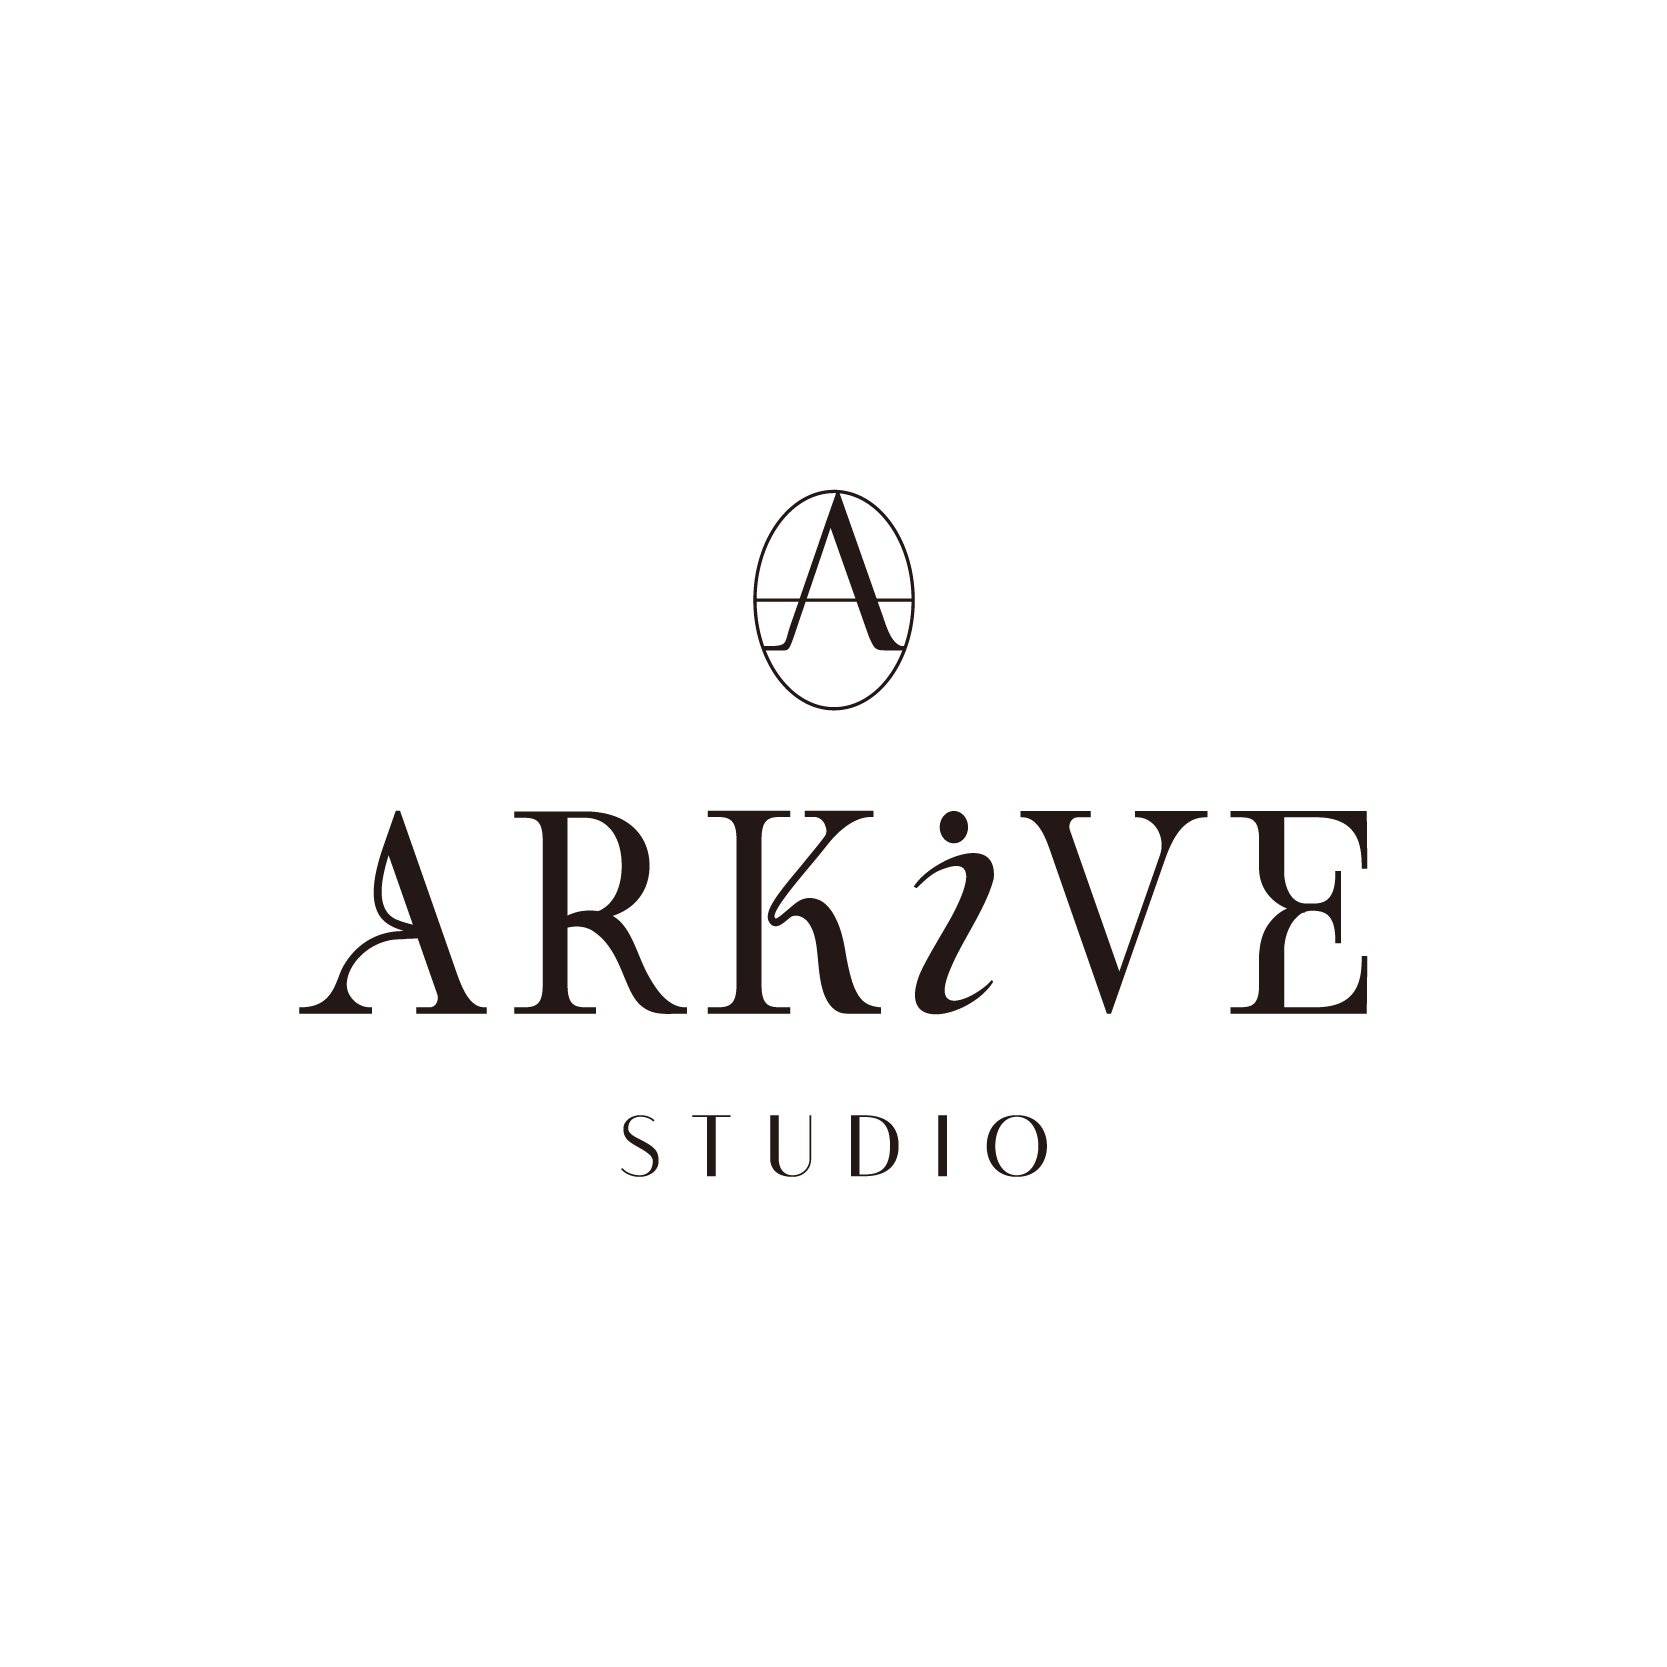 ARKIVE STUDIO